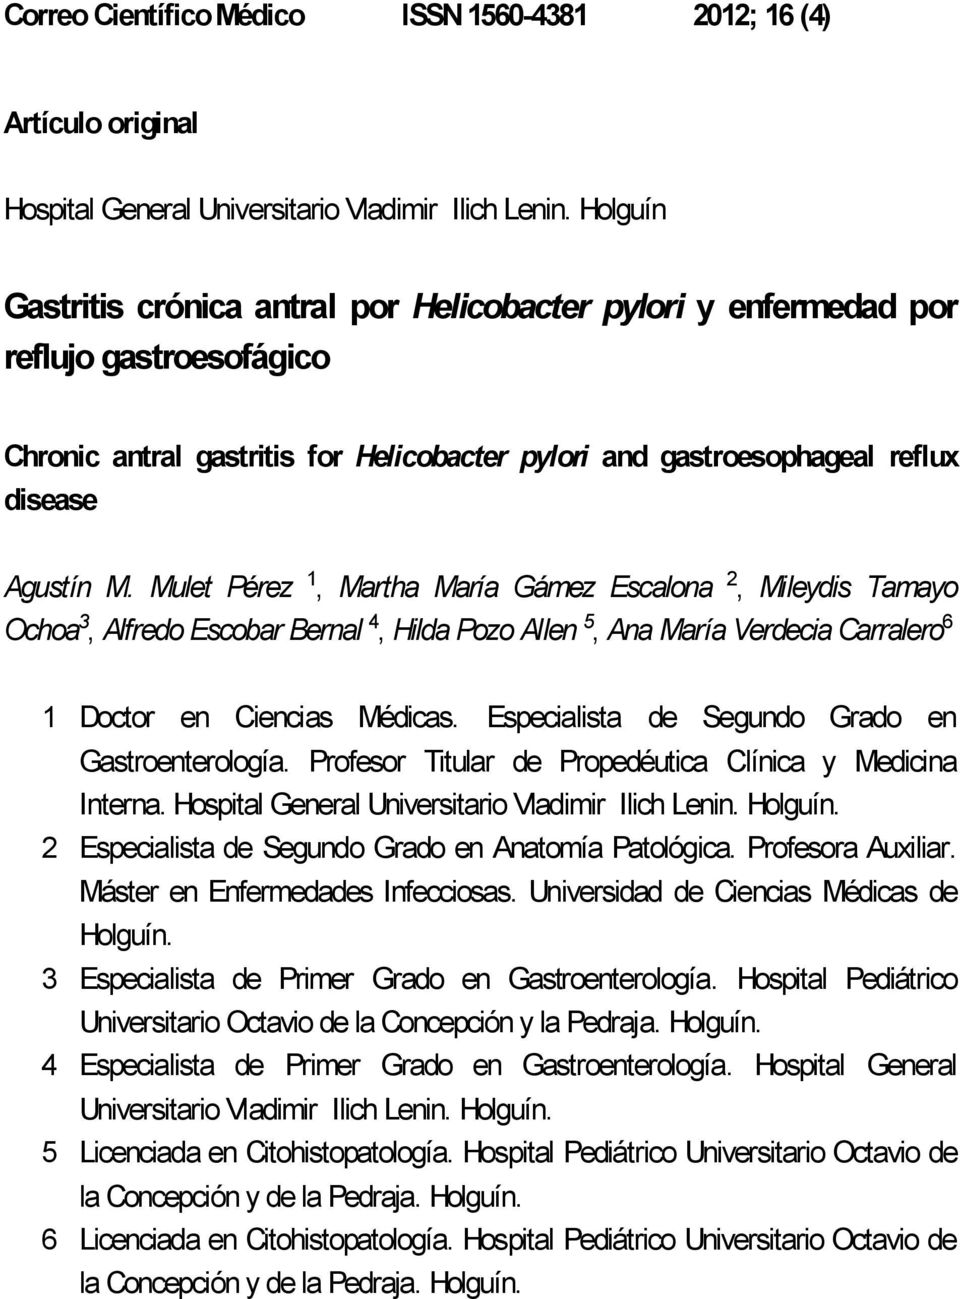 Gastritis Cronica Antral Por Helicobacter Pylori Y Enfermedad Por